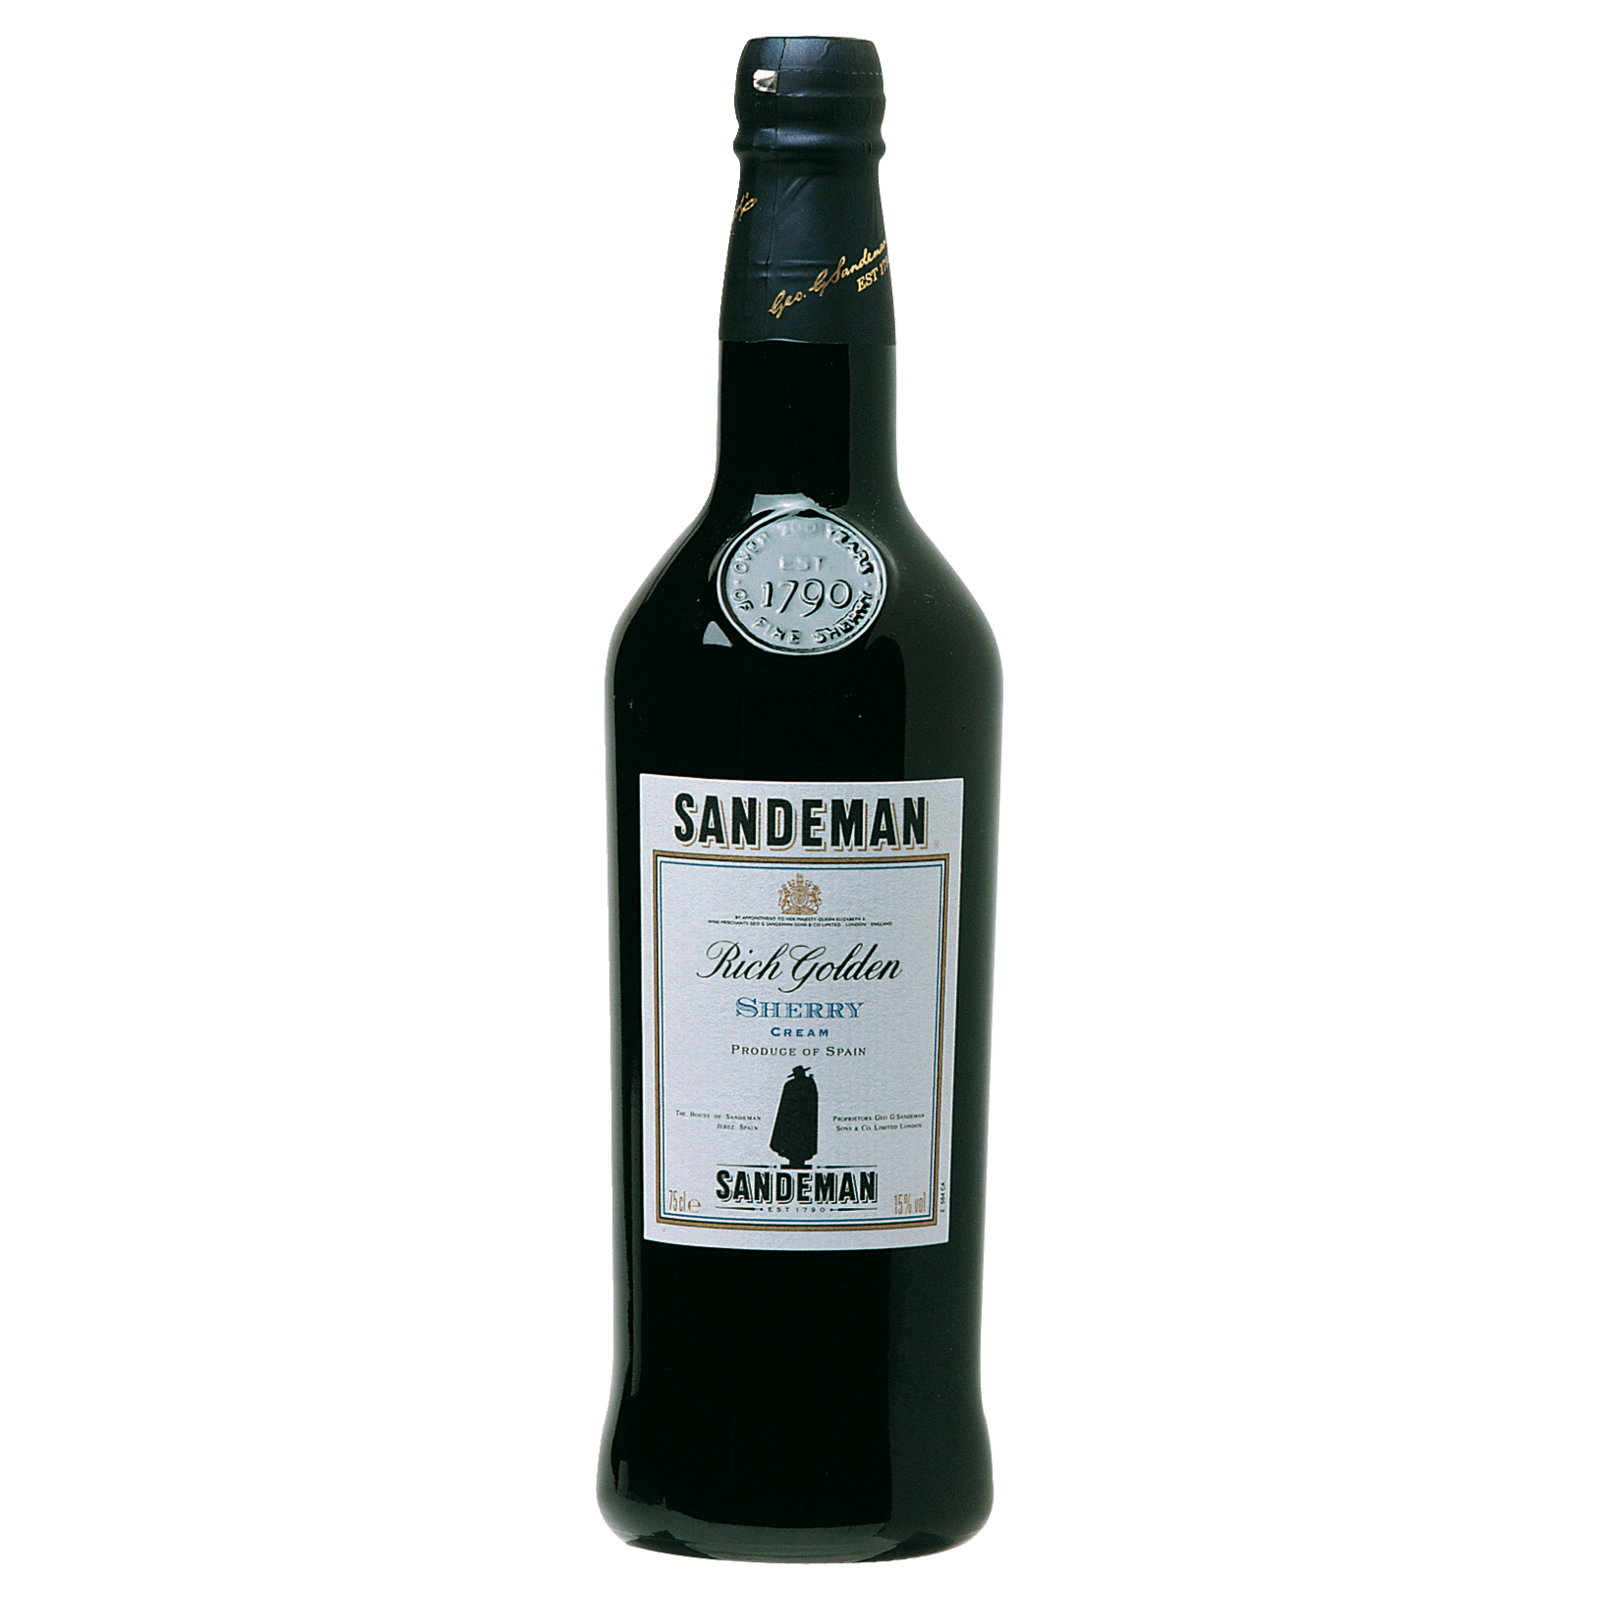 Lidl POP 5,99€ Likörwein für von Mavrodaphne lieblich, Patras